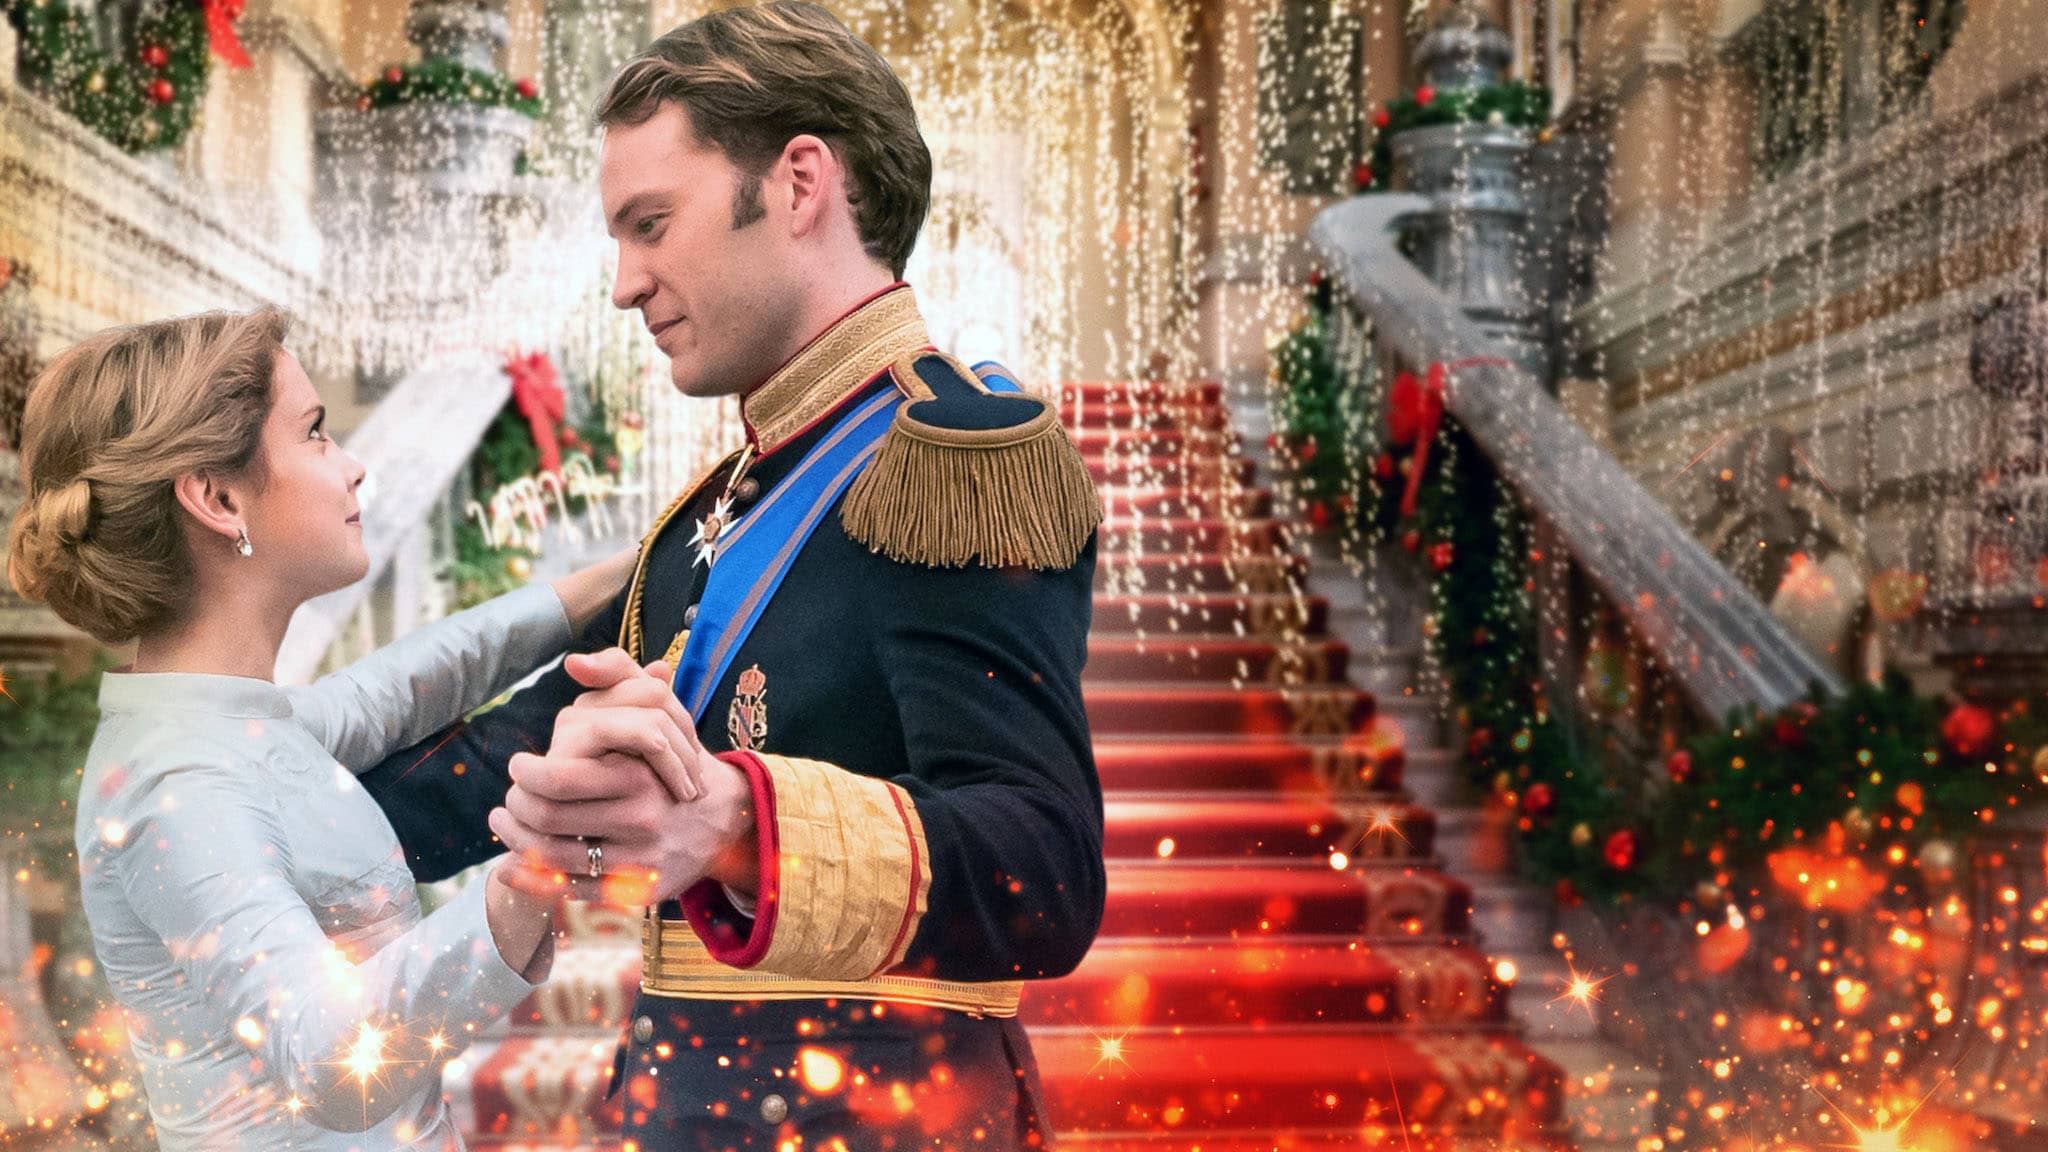 فيلم A Christmas Prince: The Royal Wedding 2018 مترجم